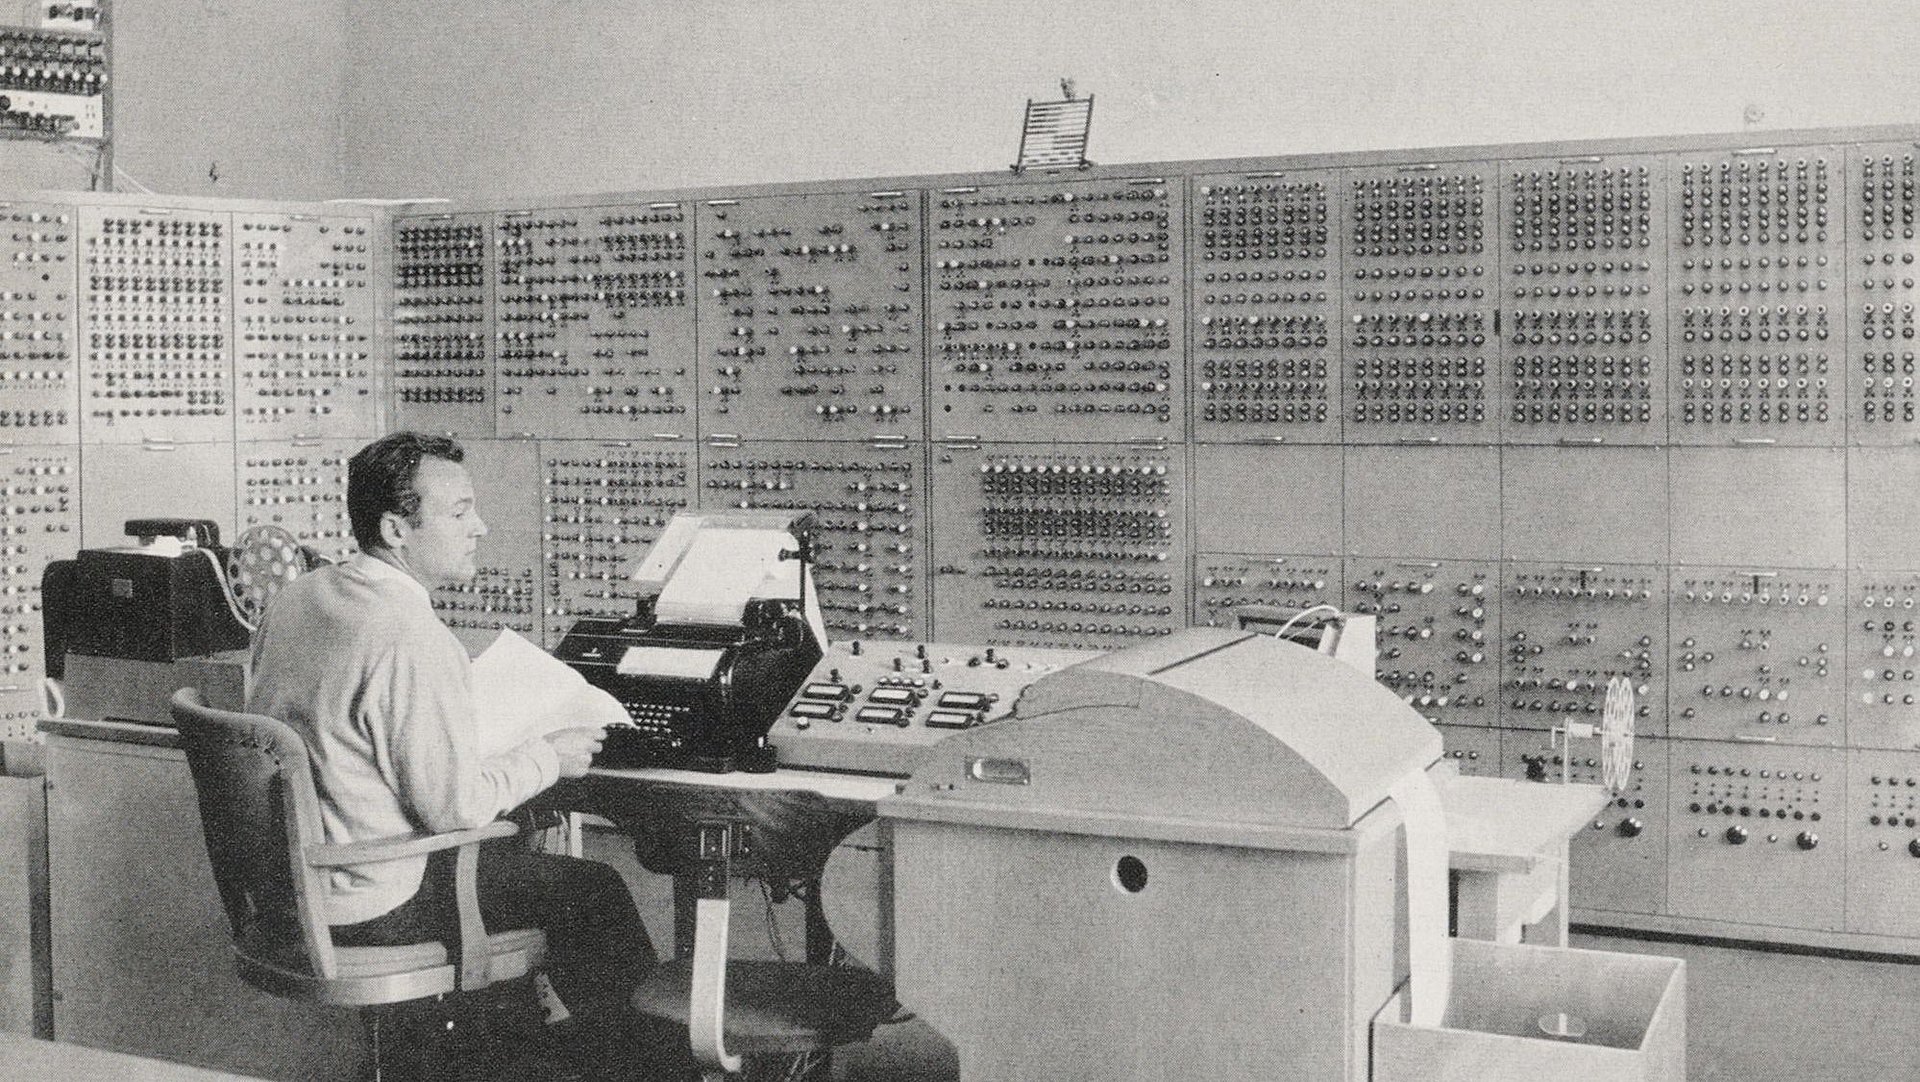 Historisches Bild der Eingabestation der Programmgesteuerten Elektronischen Rechenanlage München (PERM)